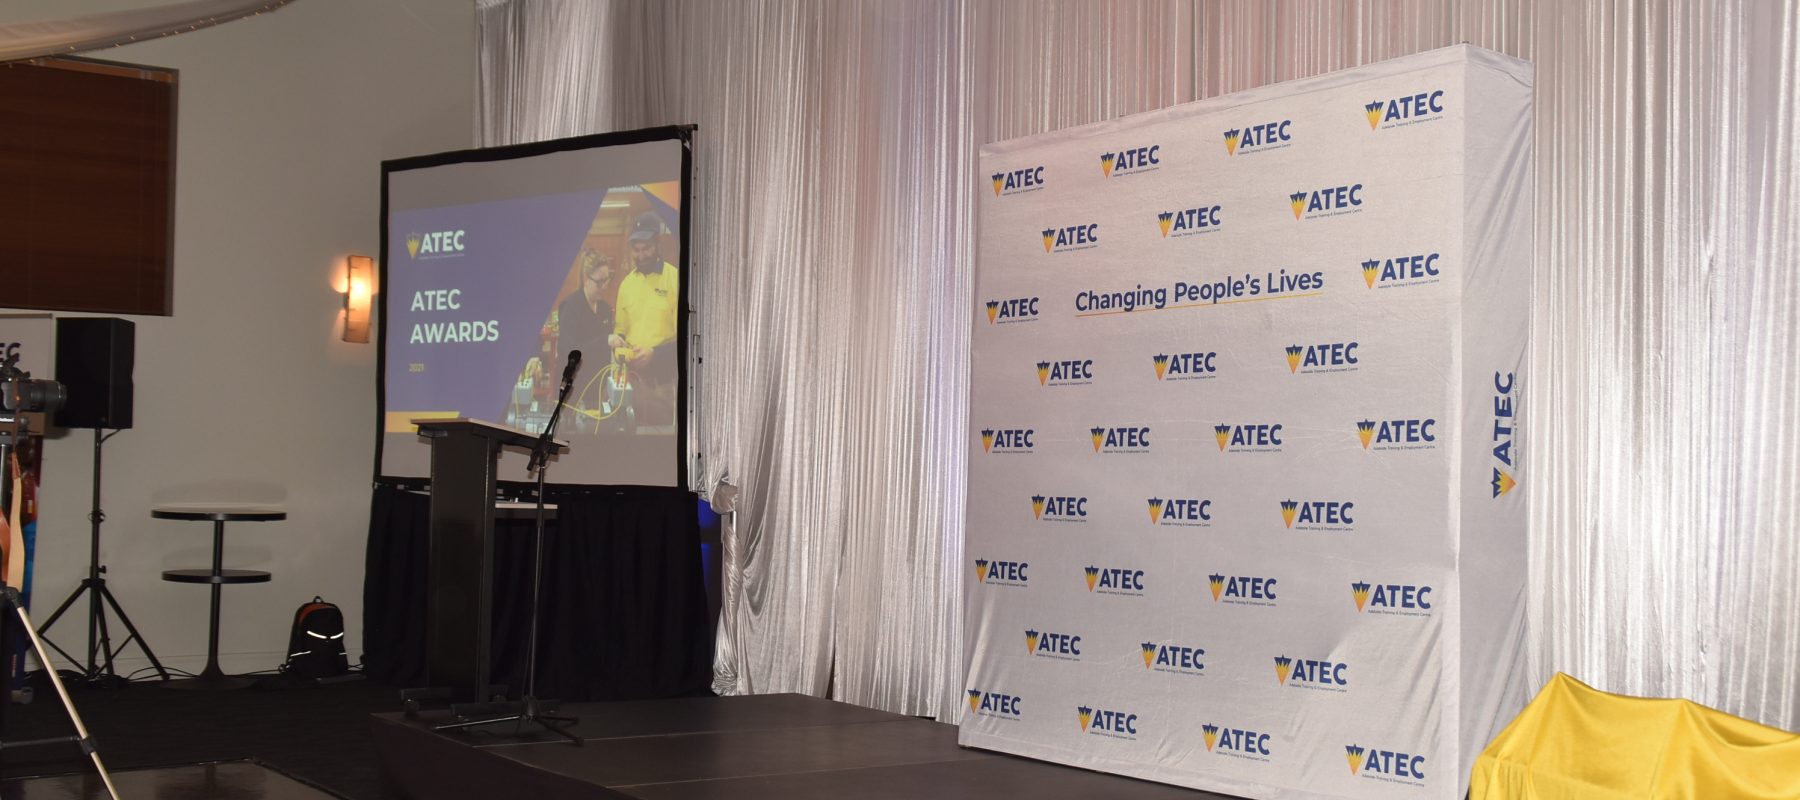 ATEC Awards 2021 sponsorship presentation stage.